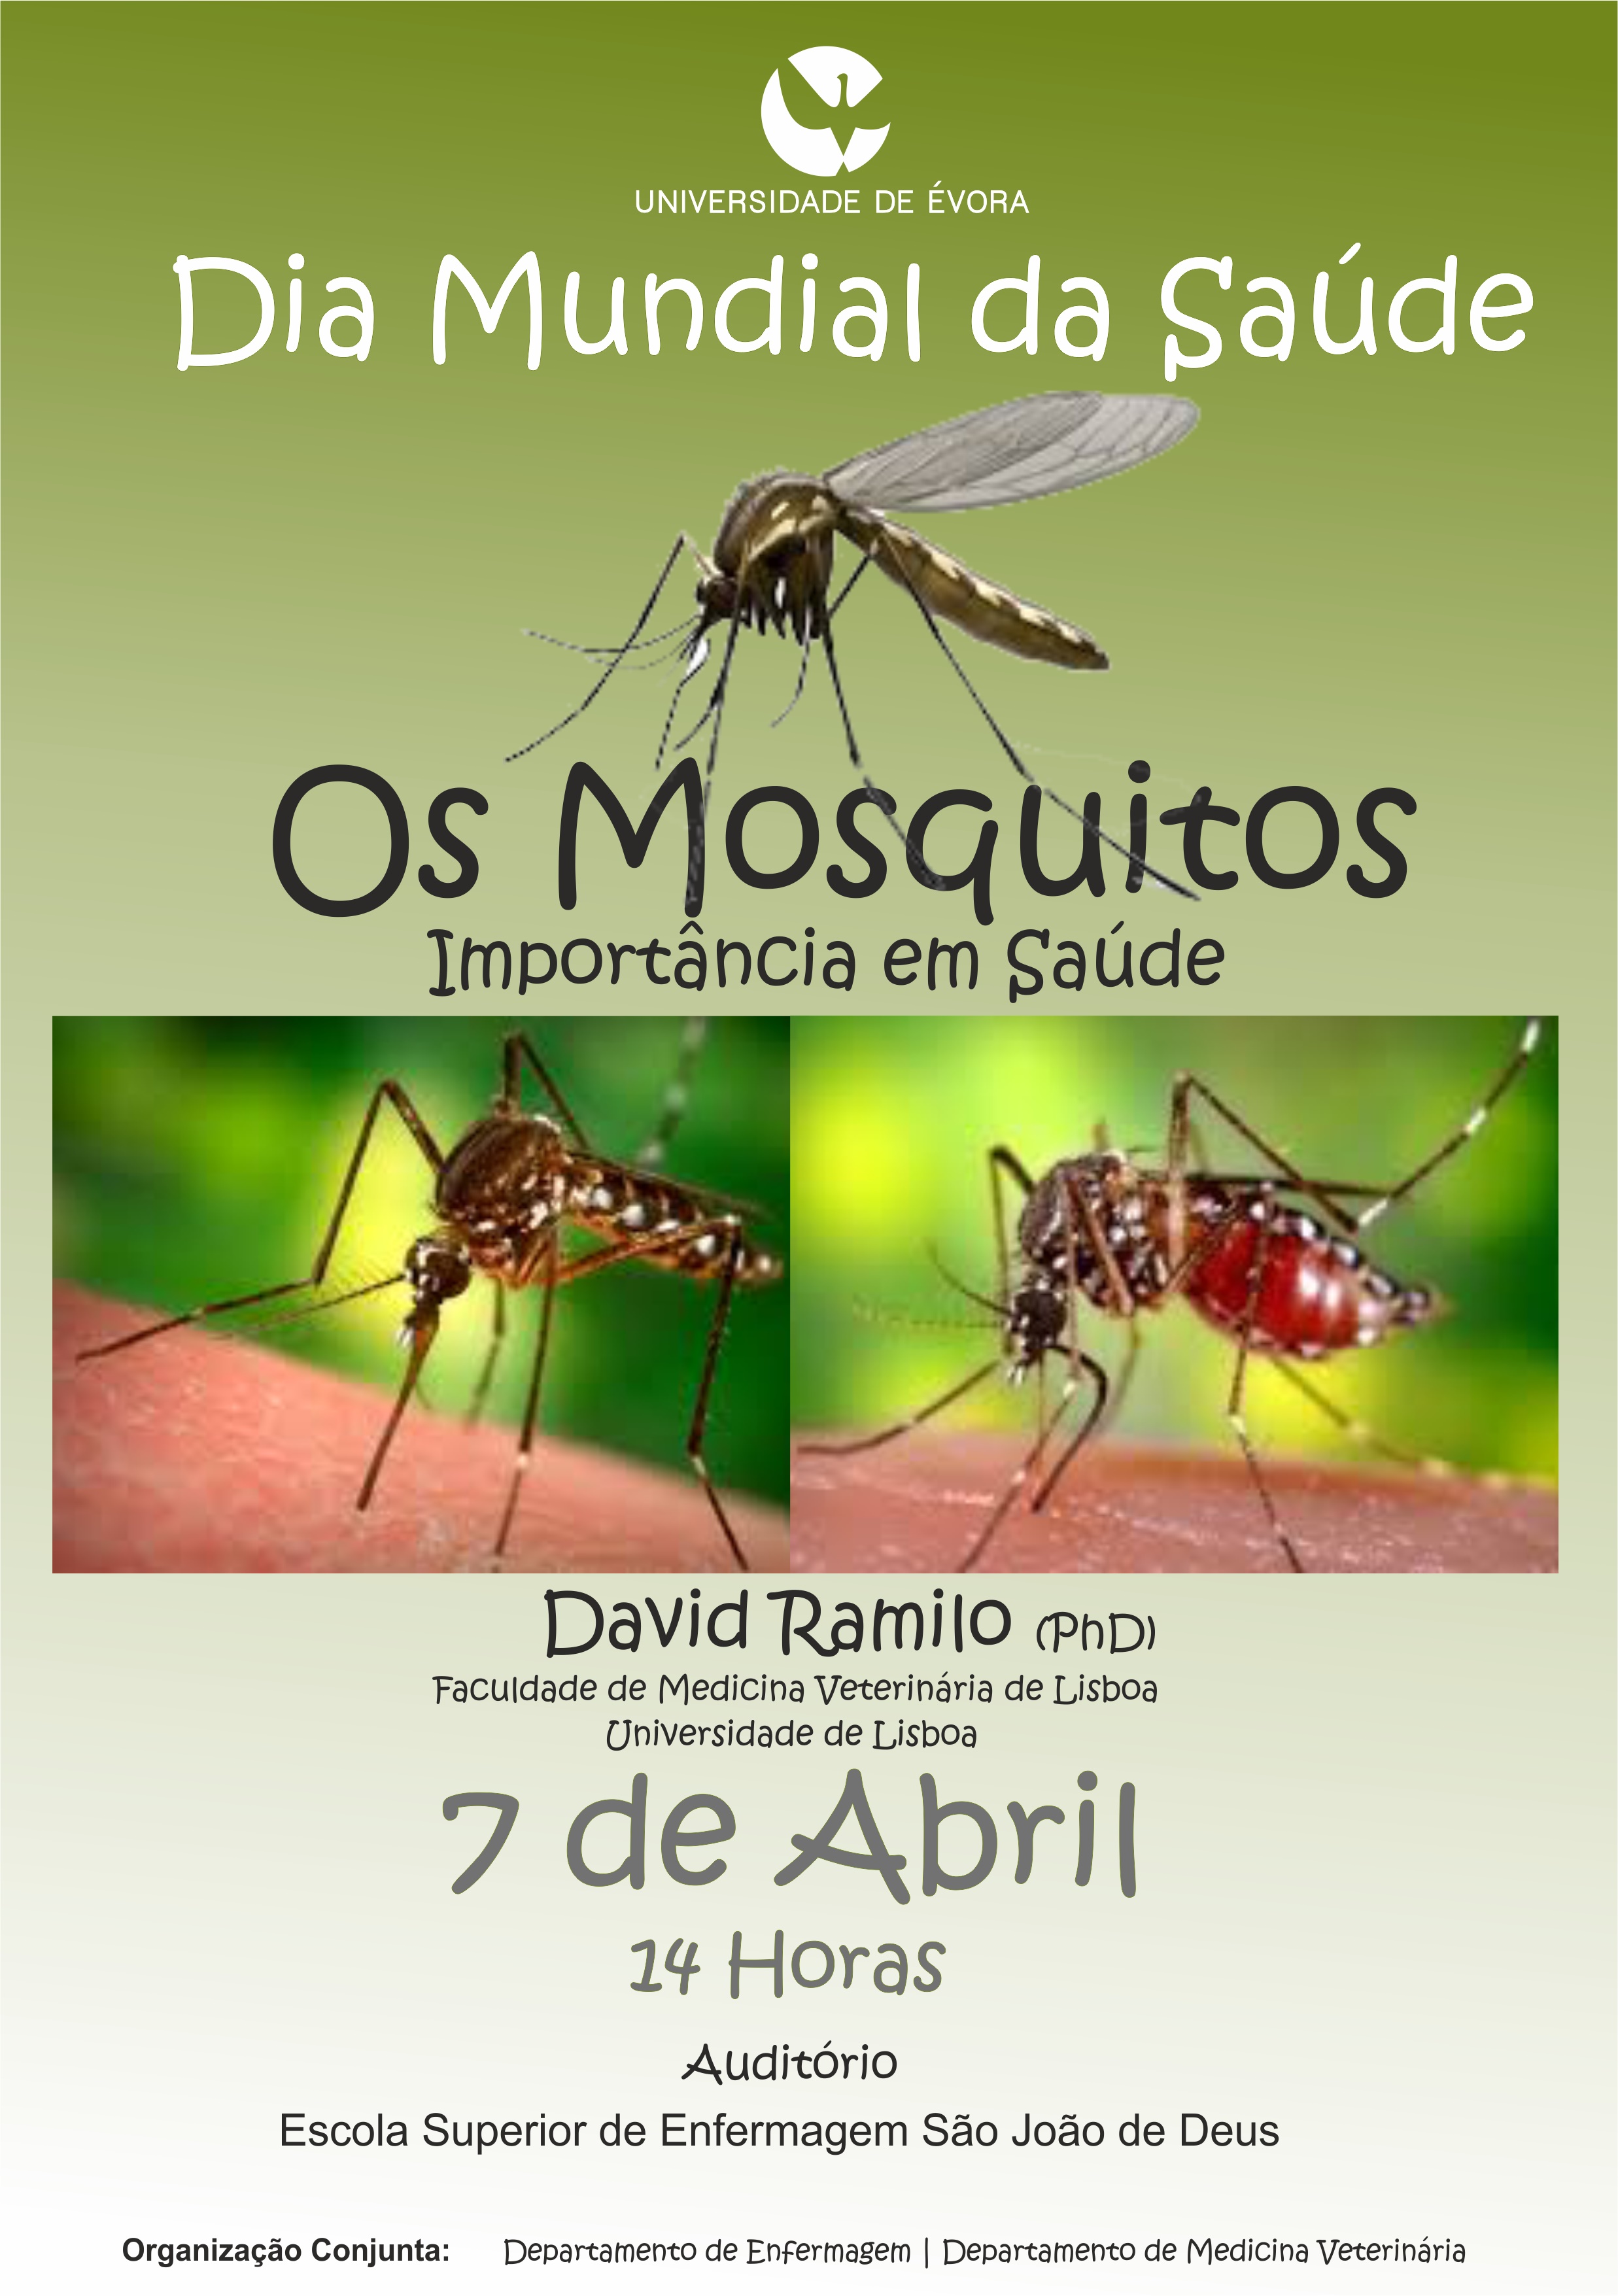 os mosquitos-importancia em saude.jpg